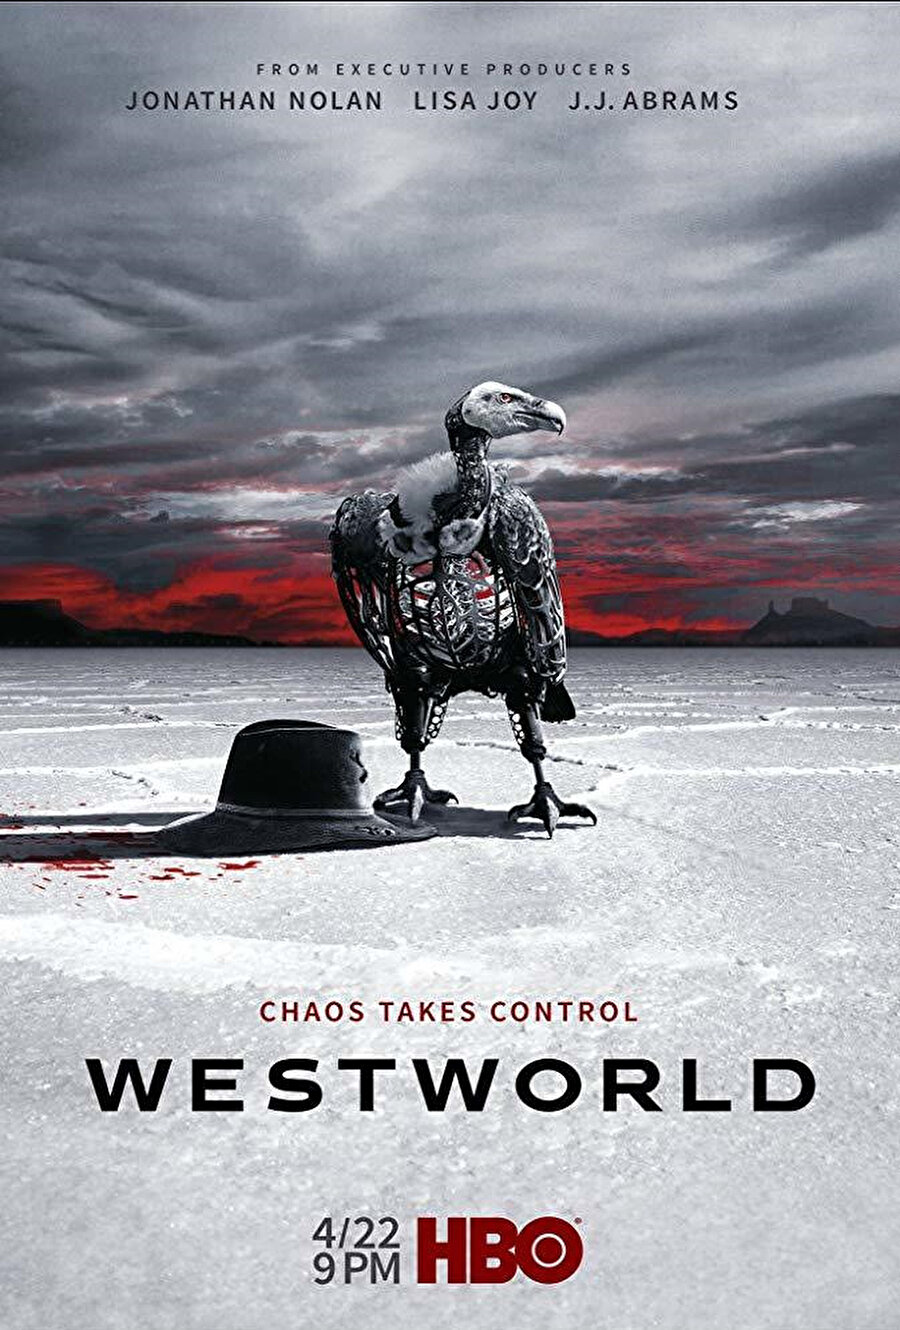 1973 yılında çekilen bir filmin yeniden uyarlaması olan Westworld (2016) etiği, psikolojisi, felsefesi, gelecek tasavvuru ile çokça konuşulmuş, tartışılmış bir dizi.